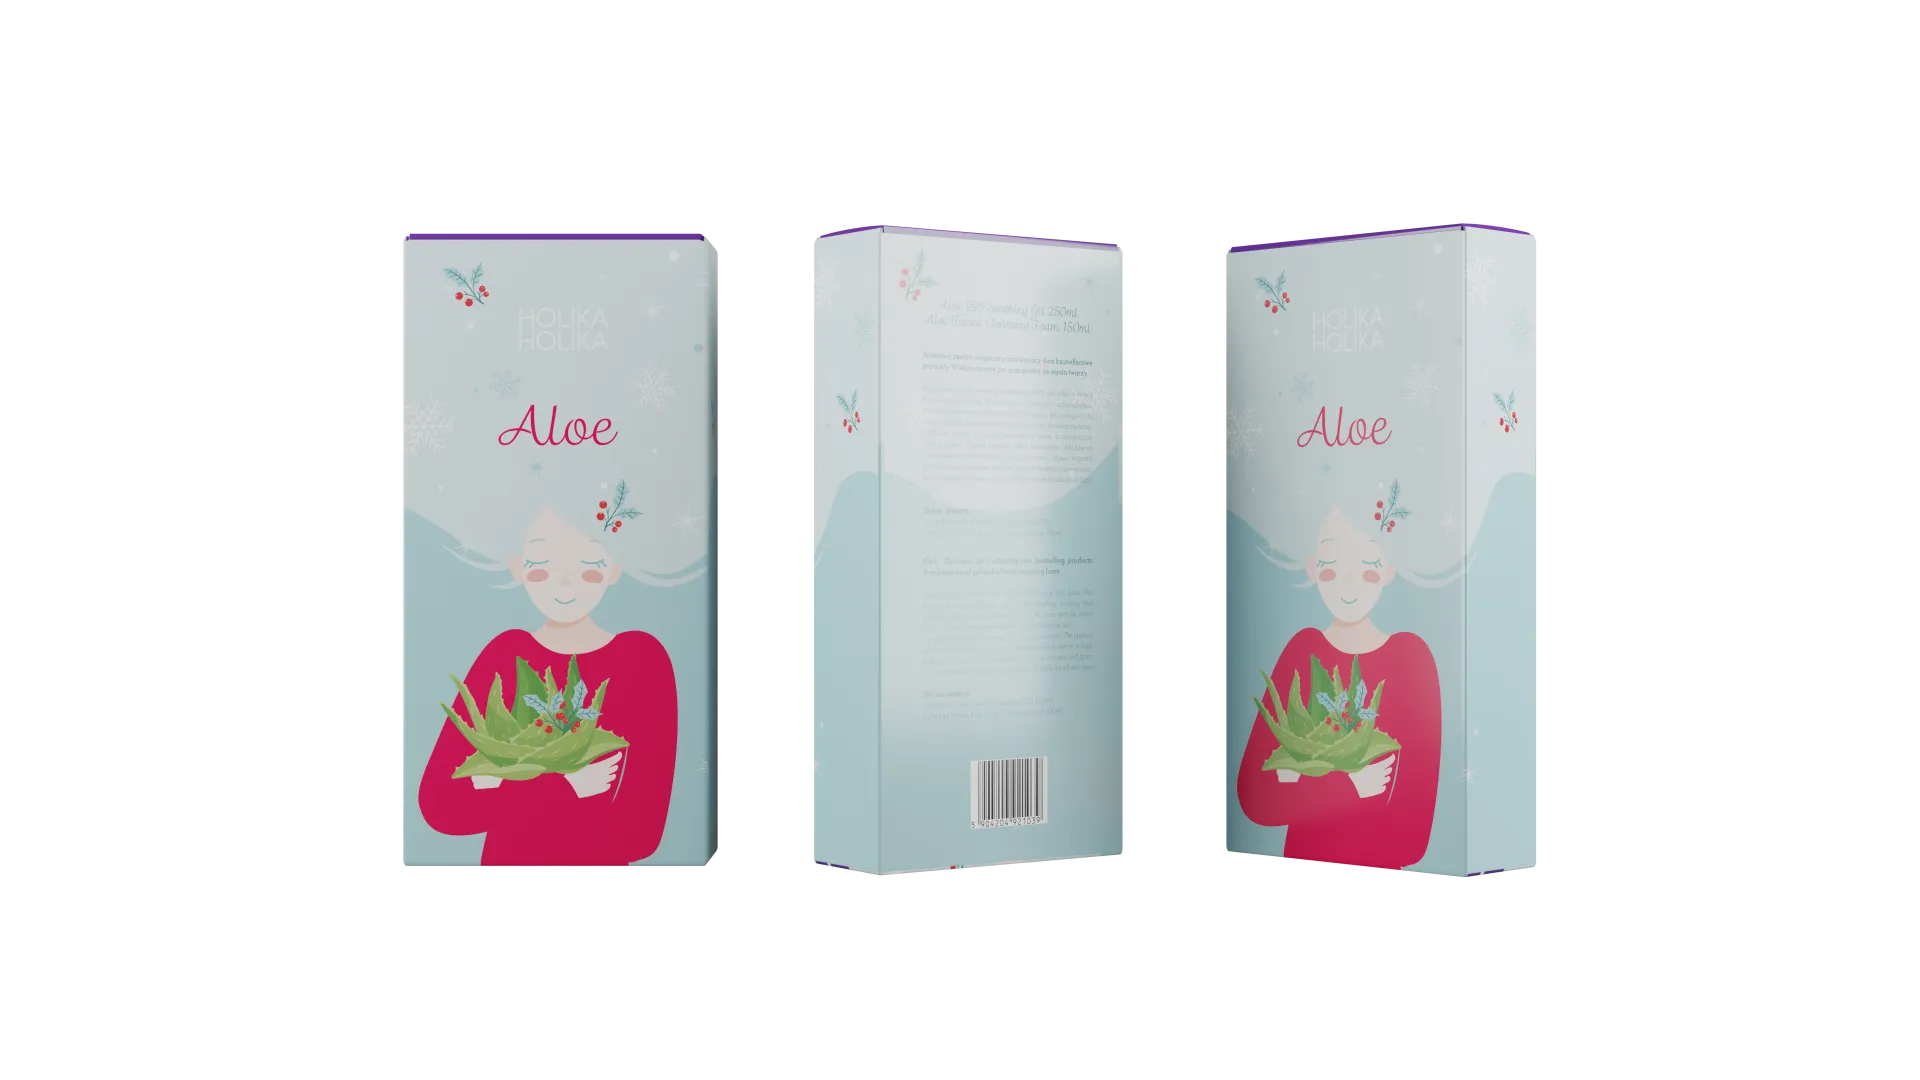 Holika Holika Aloe Skincare Kit, wielofunkcyjny żel aloesowy + pianka do oczyszczania, 250 ml + 150 ml 